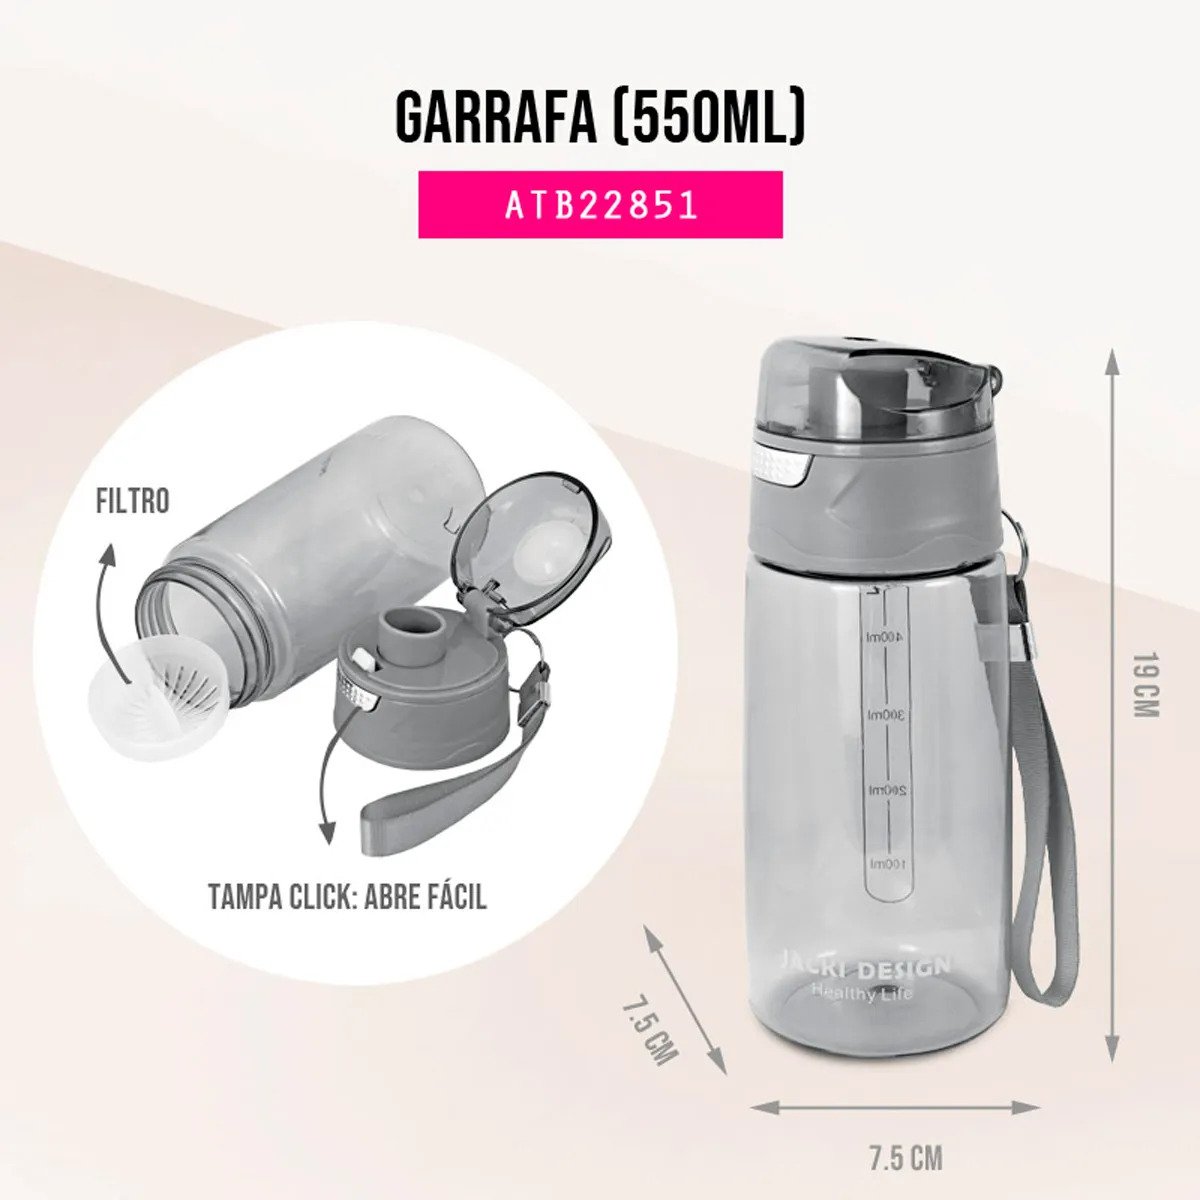 Garrafa Tipo Squeeze para 550ml Jacki Design Ref.22851:Cinza - 4